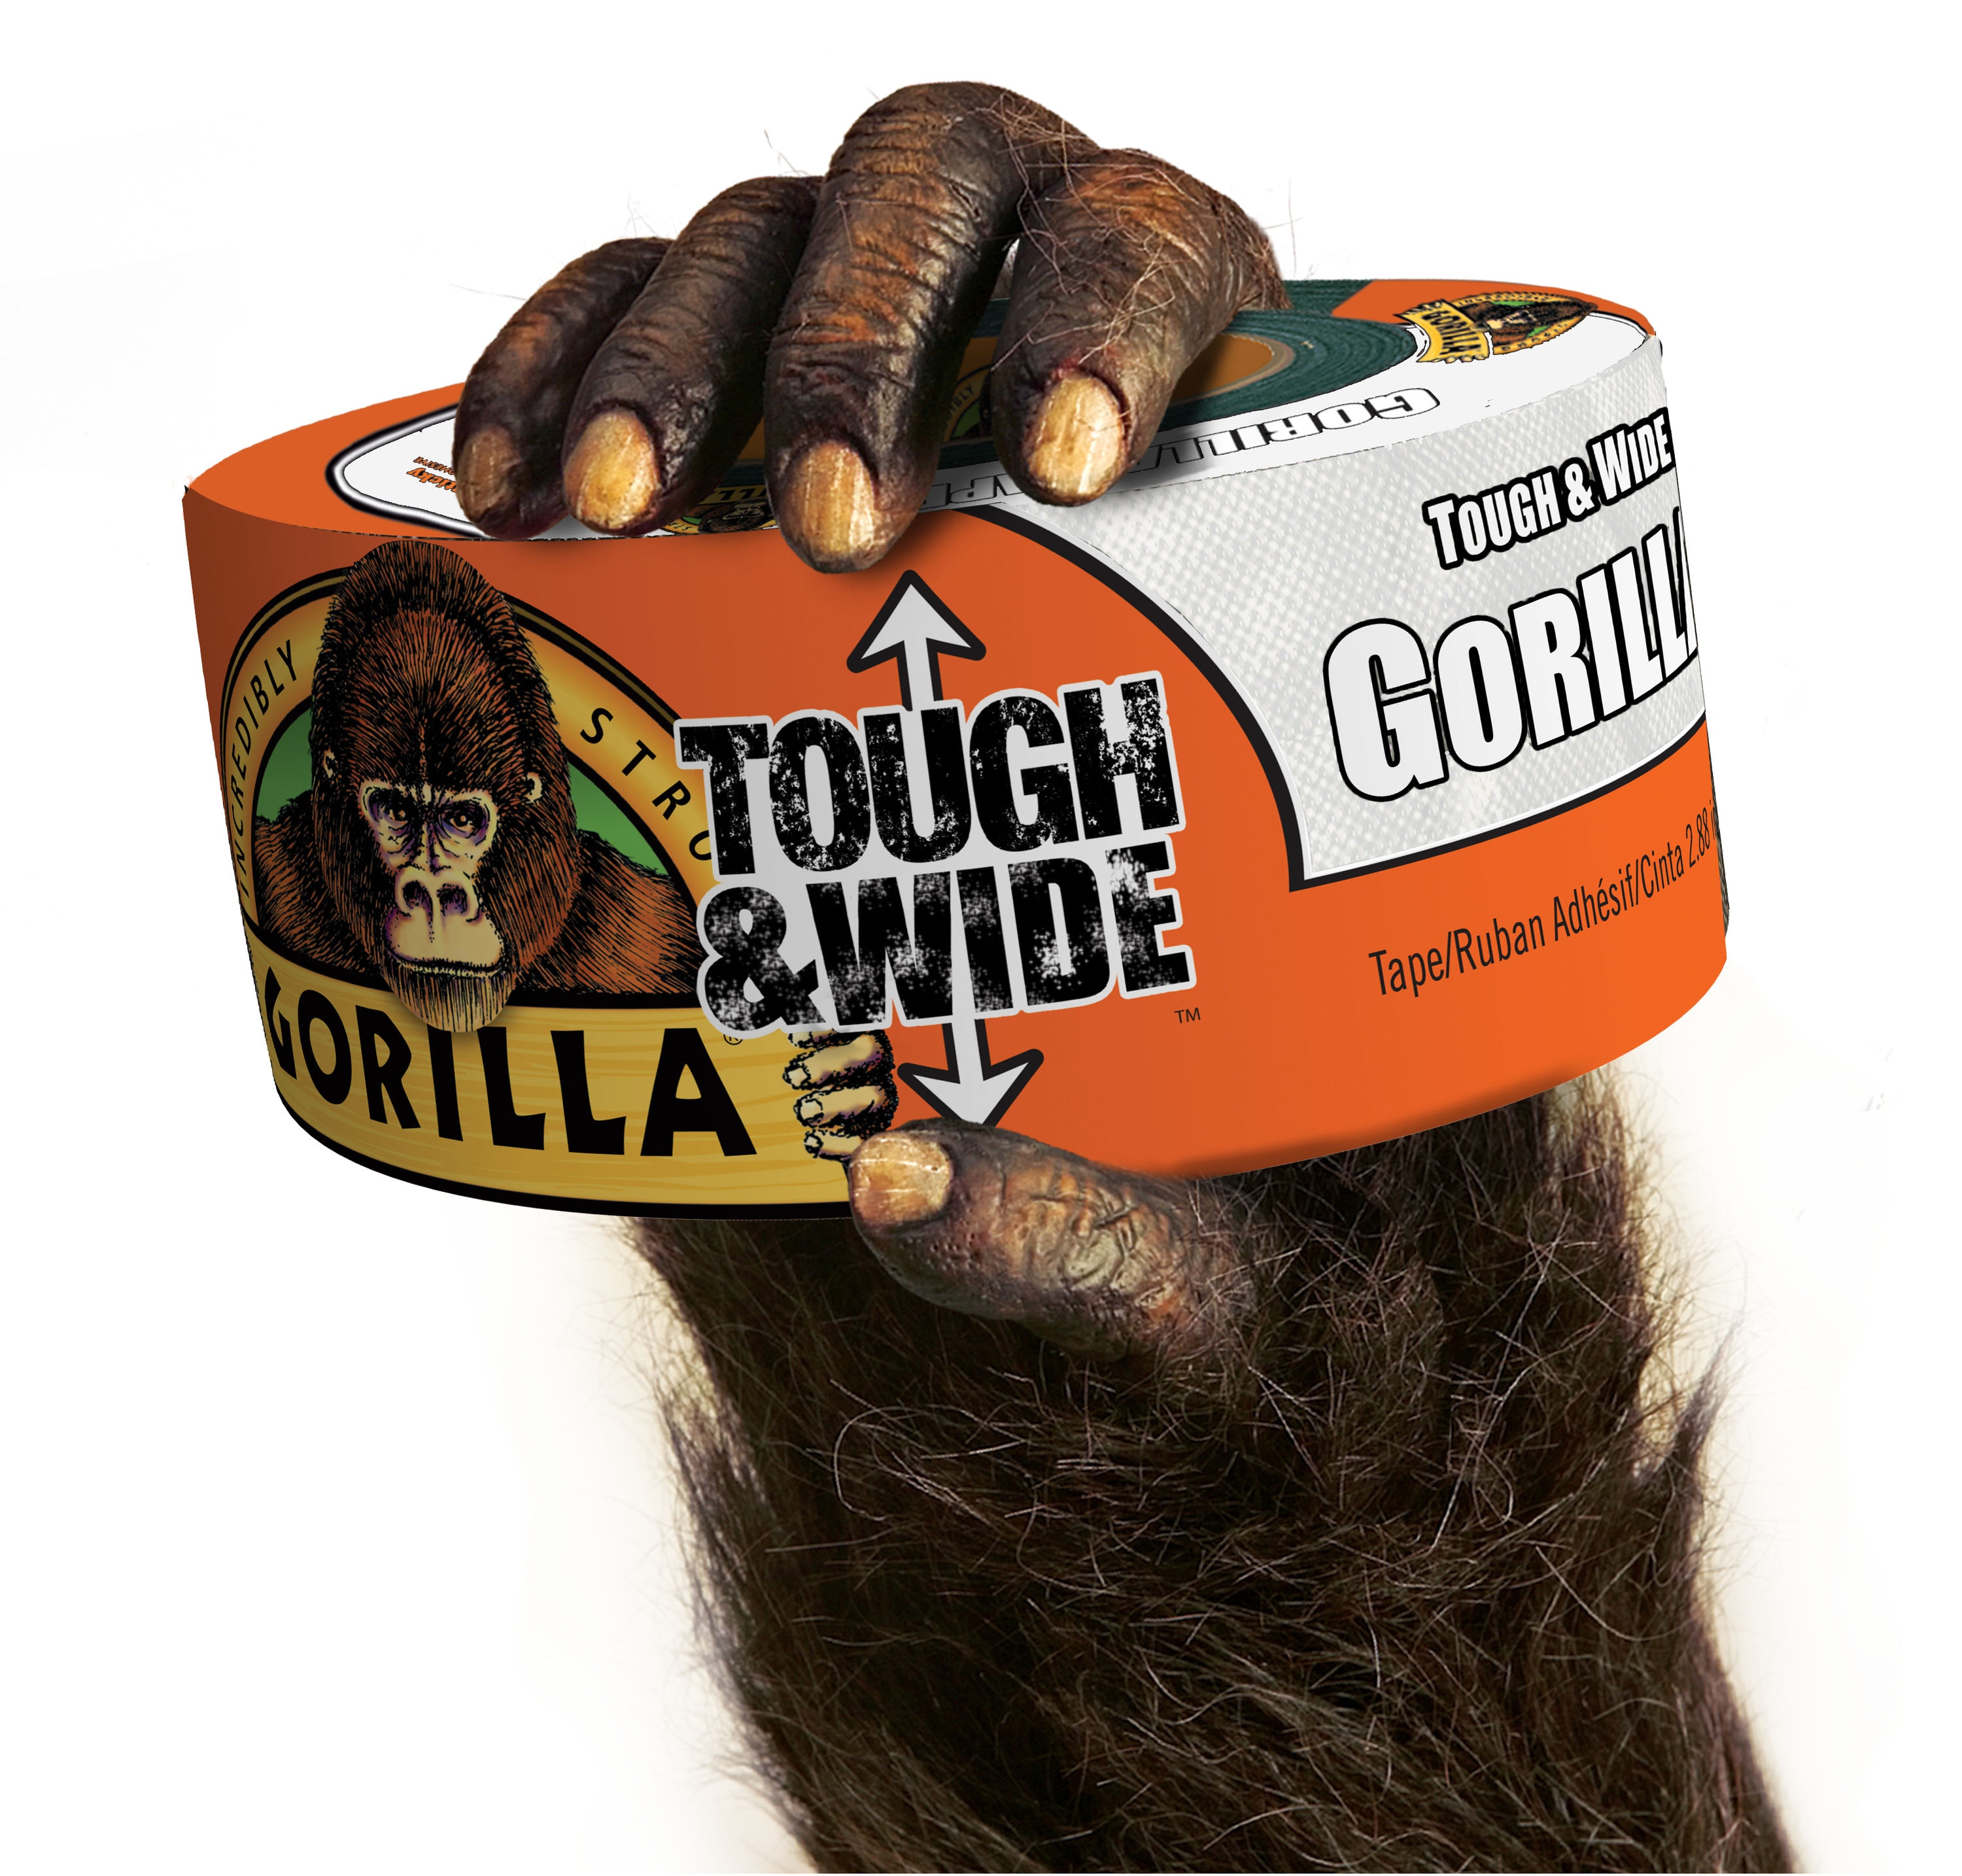 Gorilla Duct Tape White 10 Yard